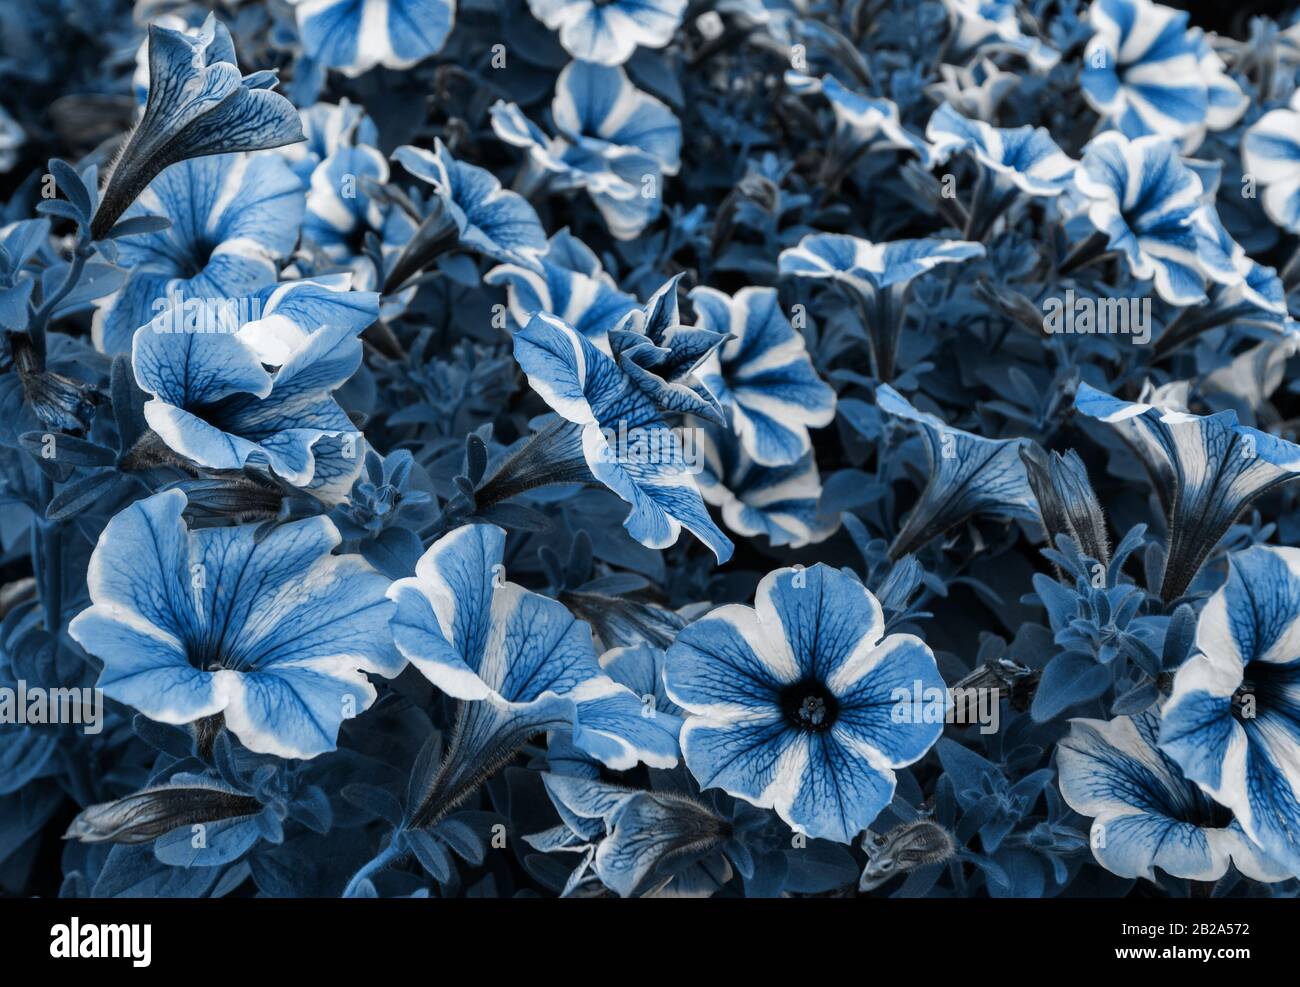 Fleurs avec réglage des couleurs pour s'adapter à Pantone 19-4052 Classic Blue, couleur de l'année 2020. Couleur Pantone de l'année 2020. Banque D'Images